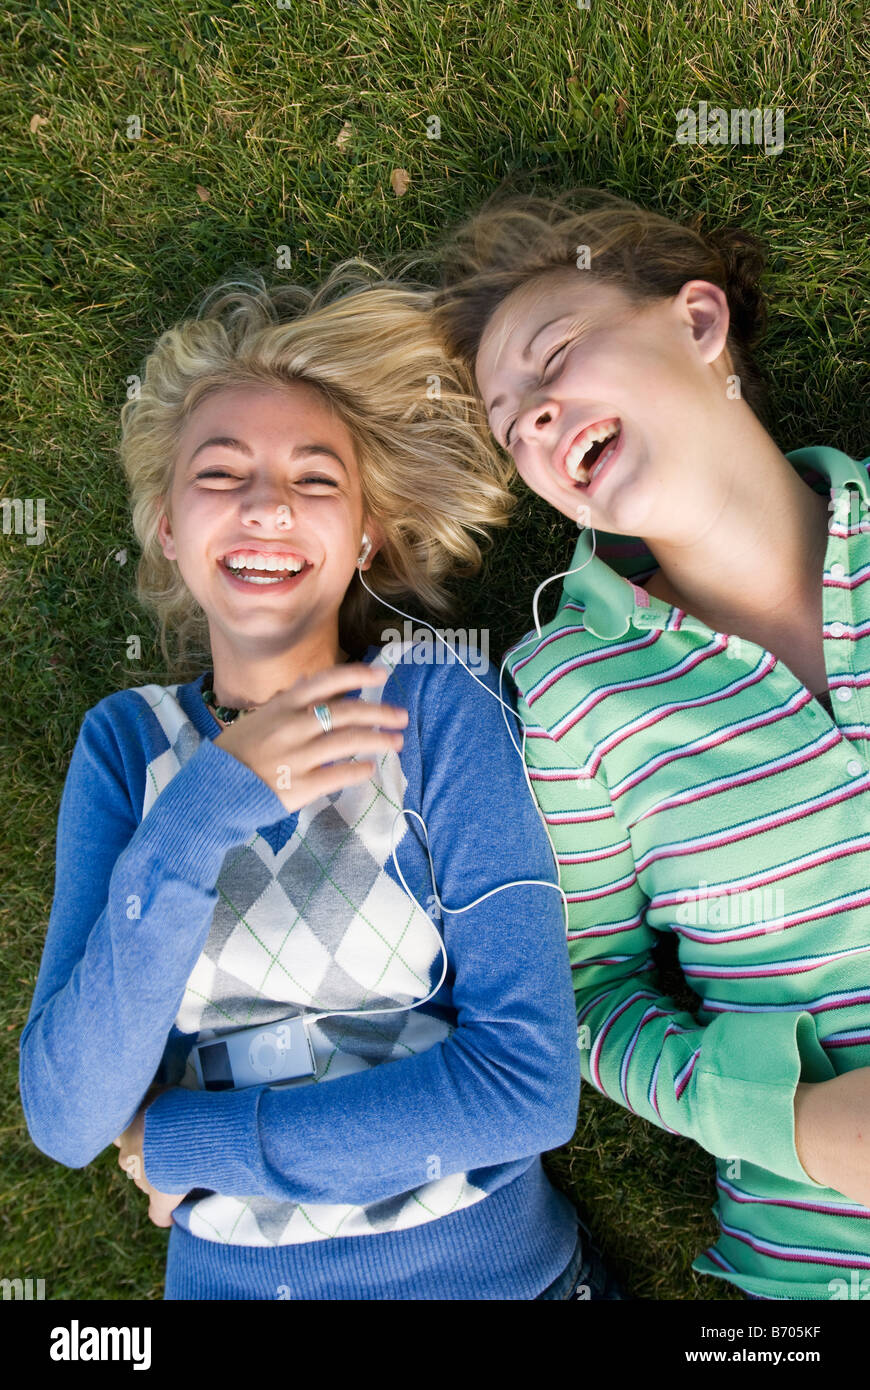 Due ragazze ridere mentre posa in erba ascoltando un ipod, Fort Collins, Colorado. Foto Stock